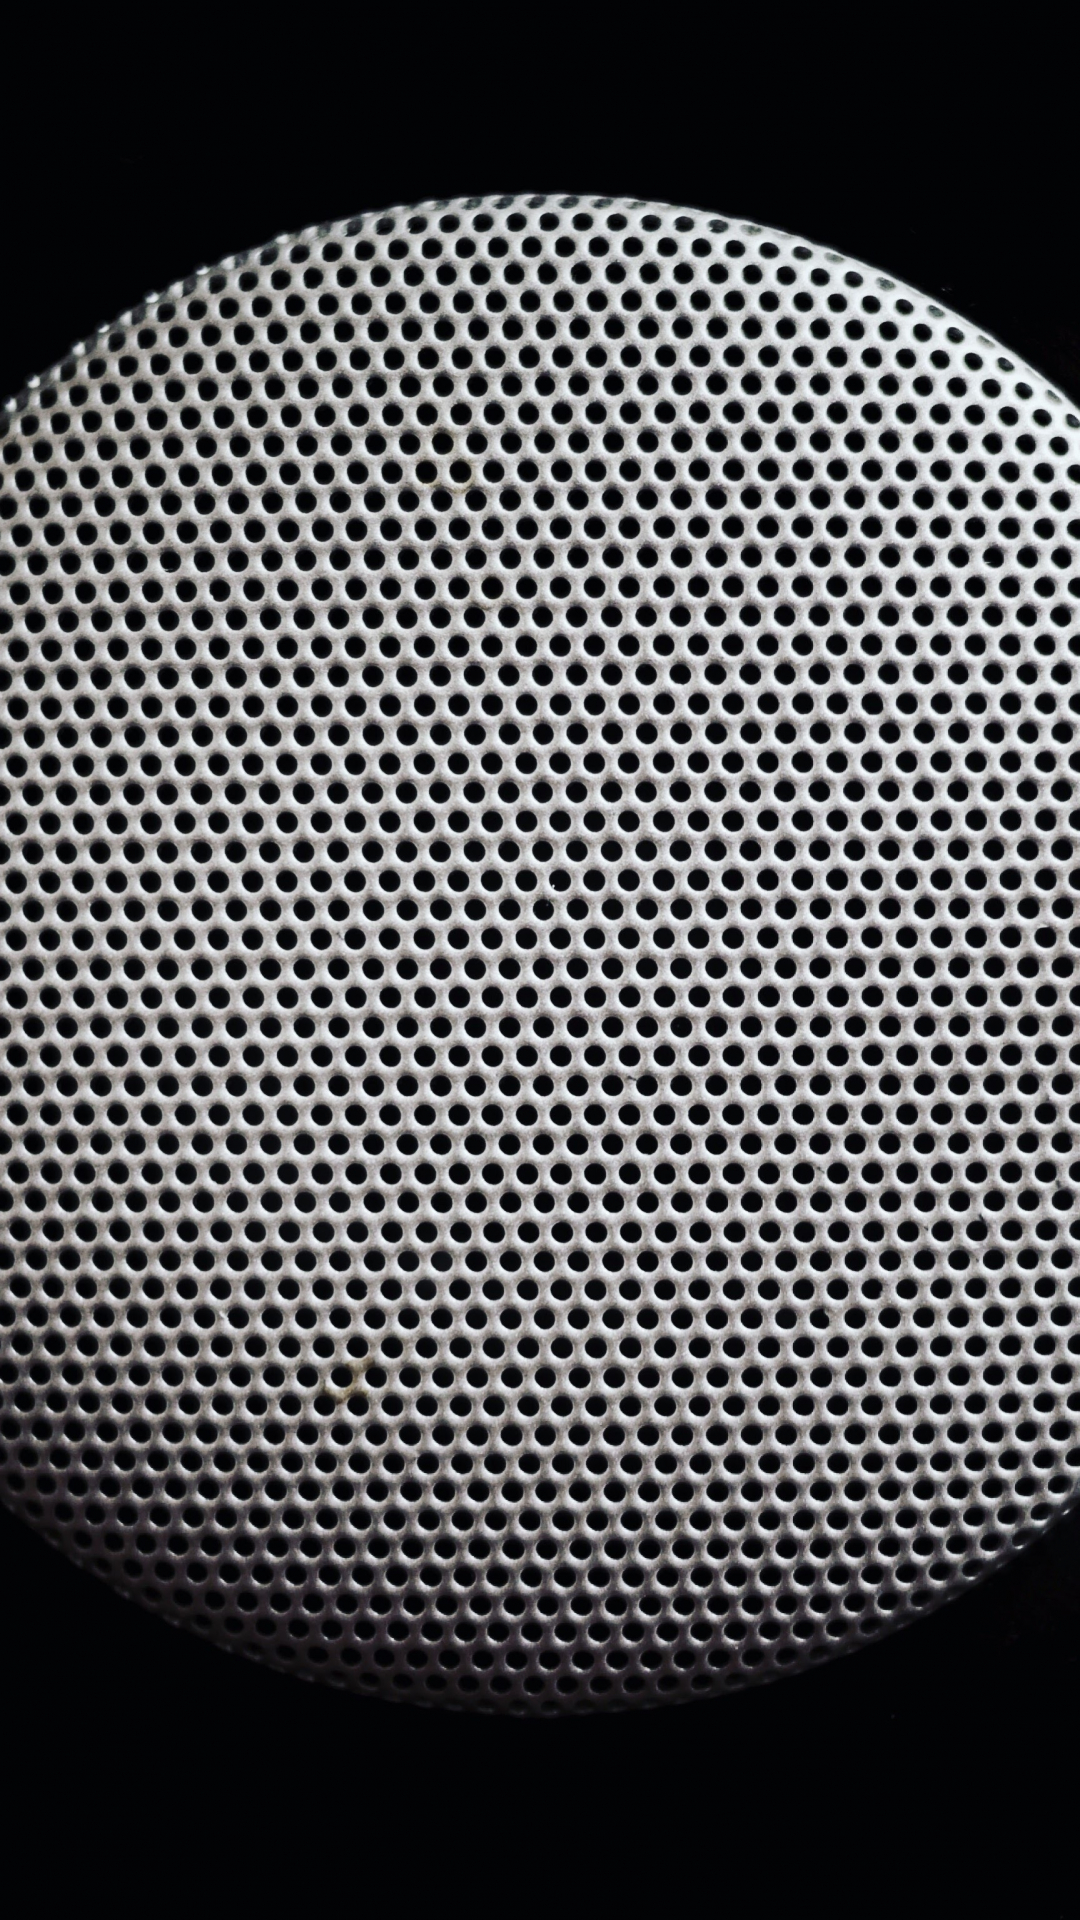 Speaker, Pattern, Round iPhone Wallpaper